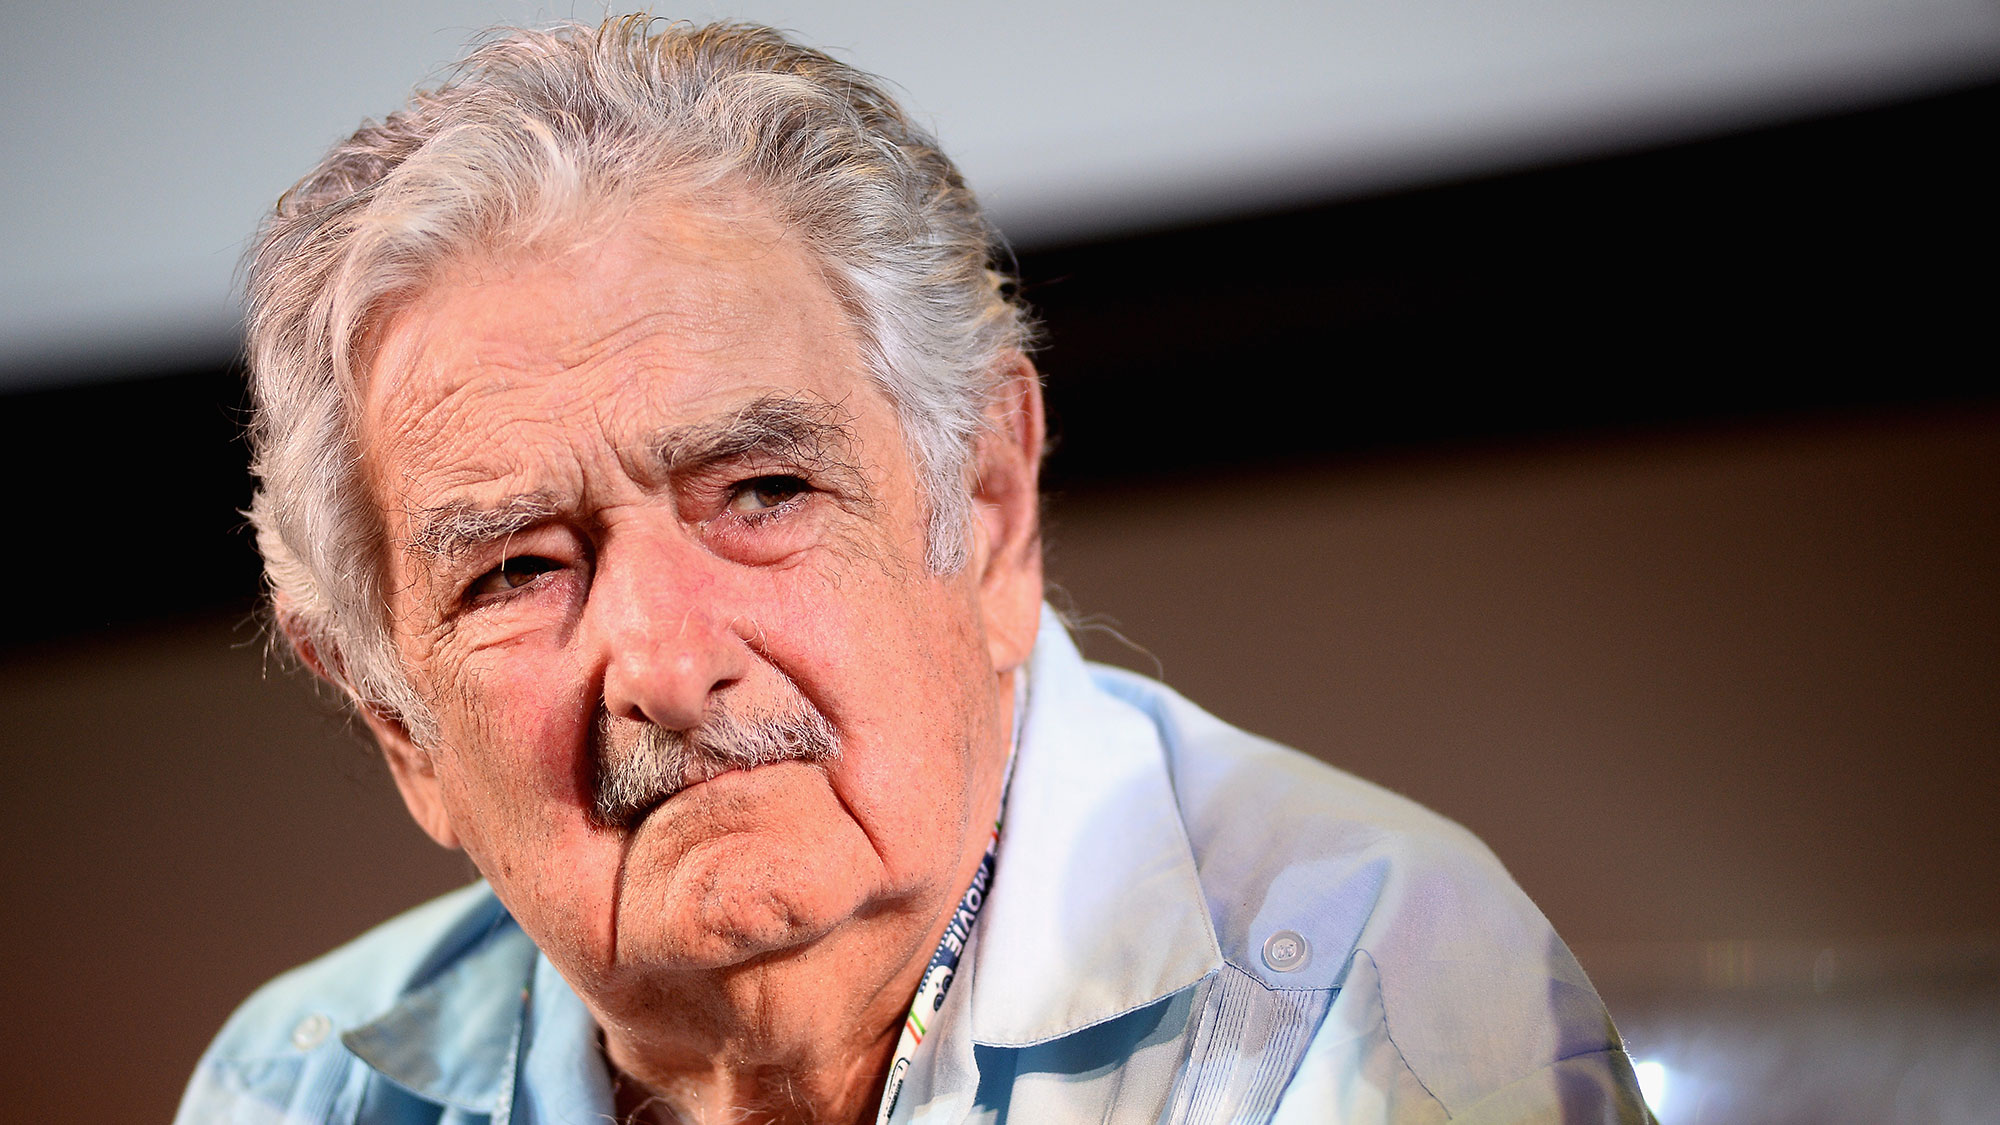 José “Pepe” Mujica padece cáncer de esófago, confirma su
médica tratante